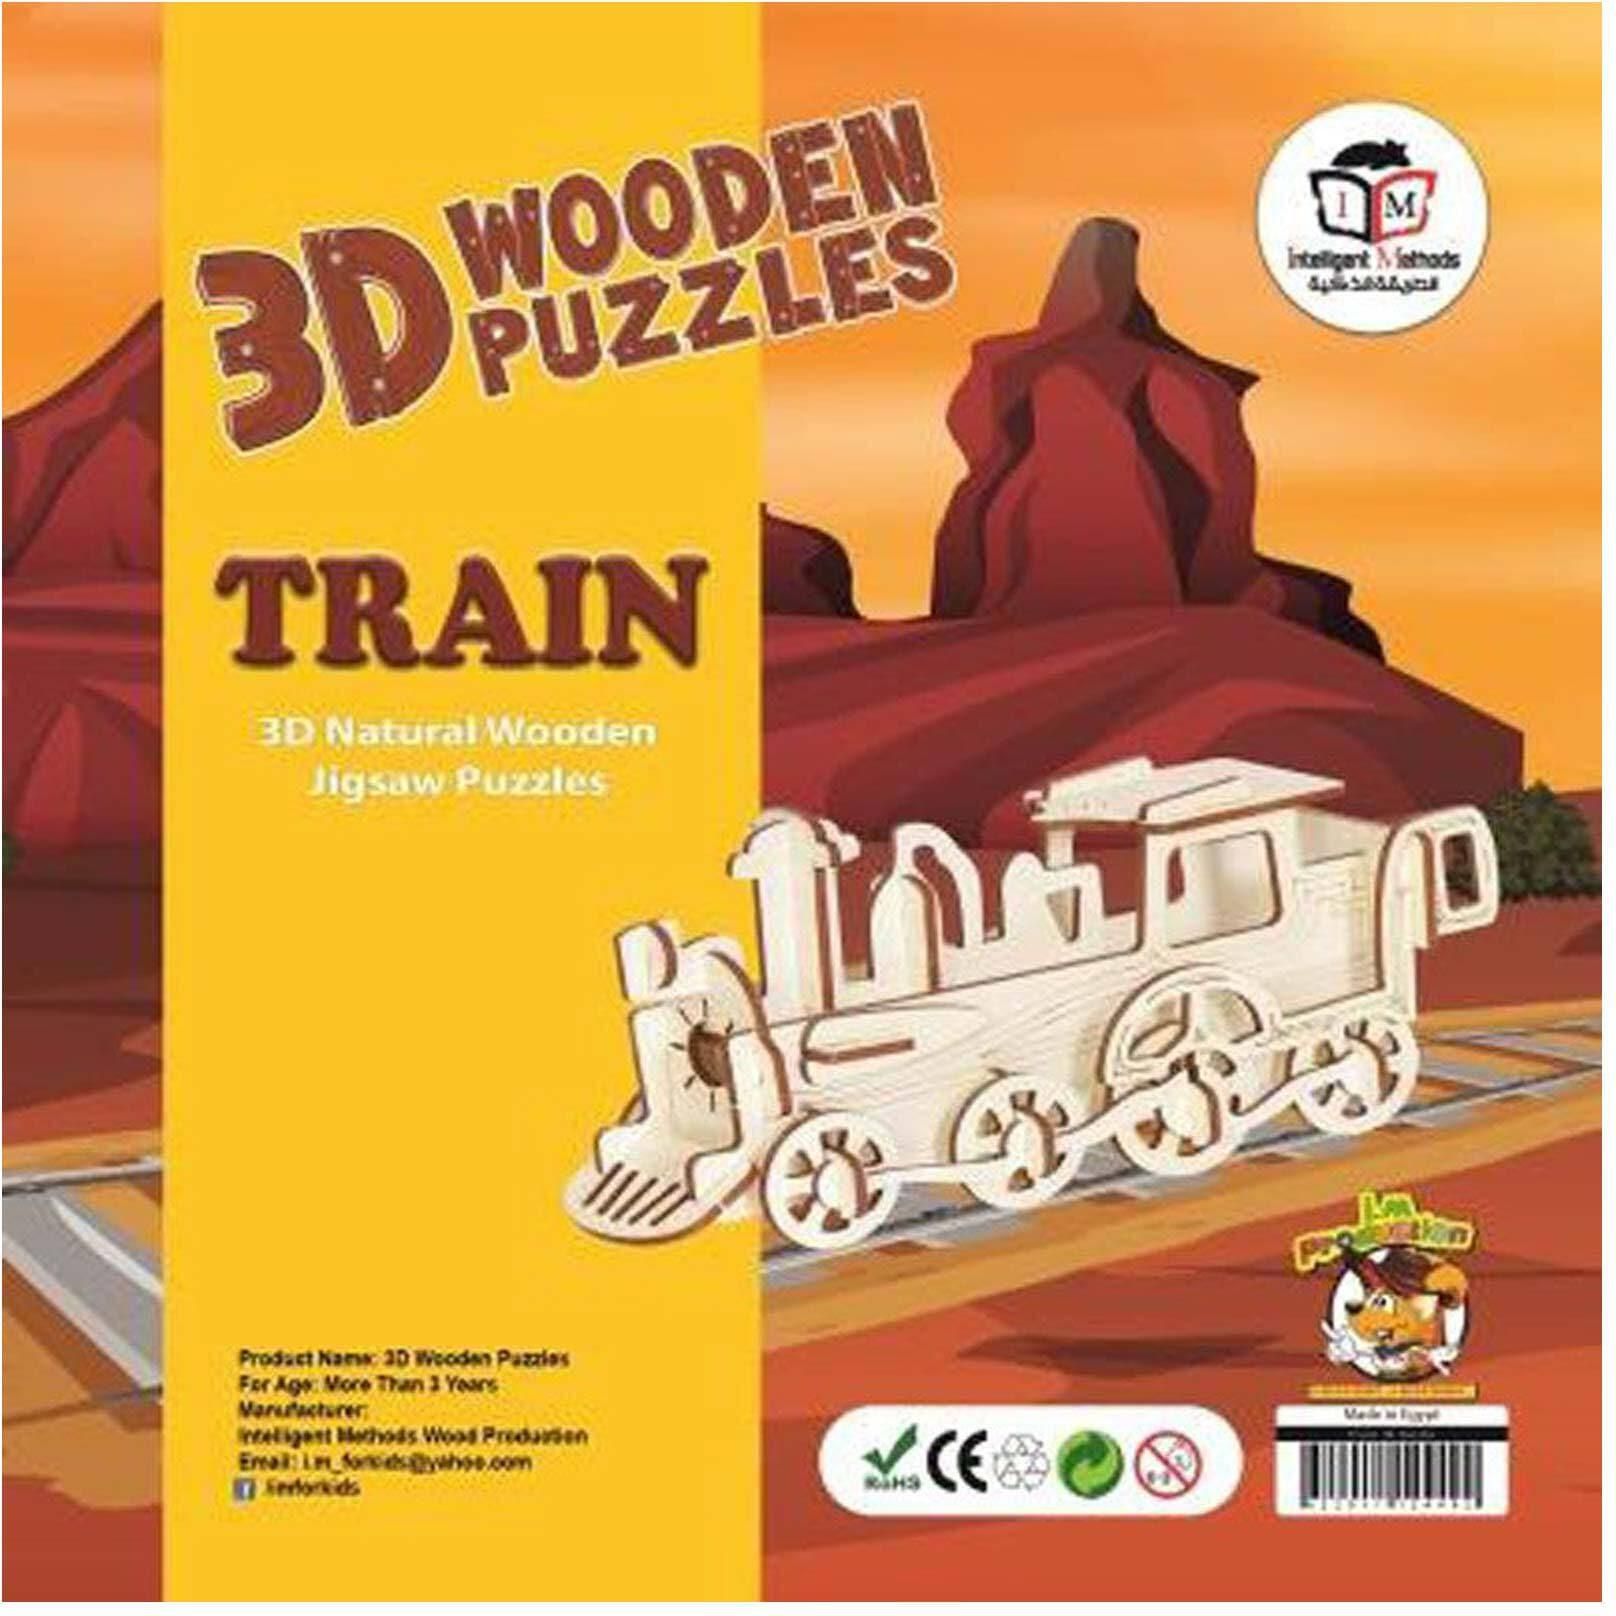 3D Wooden Puzzle - Train Shape